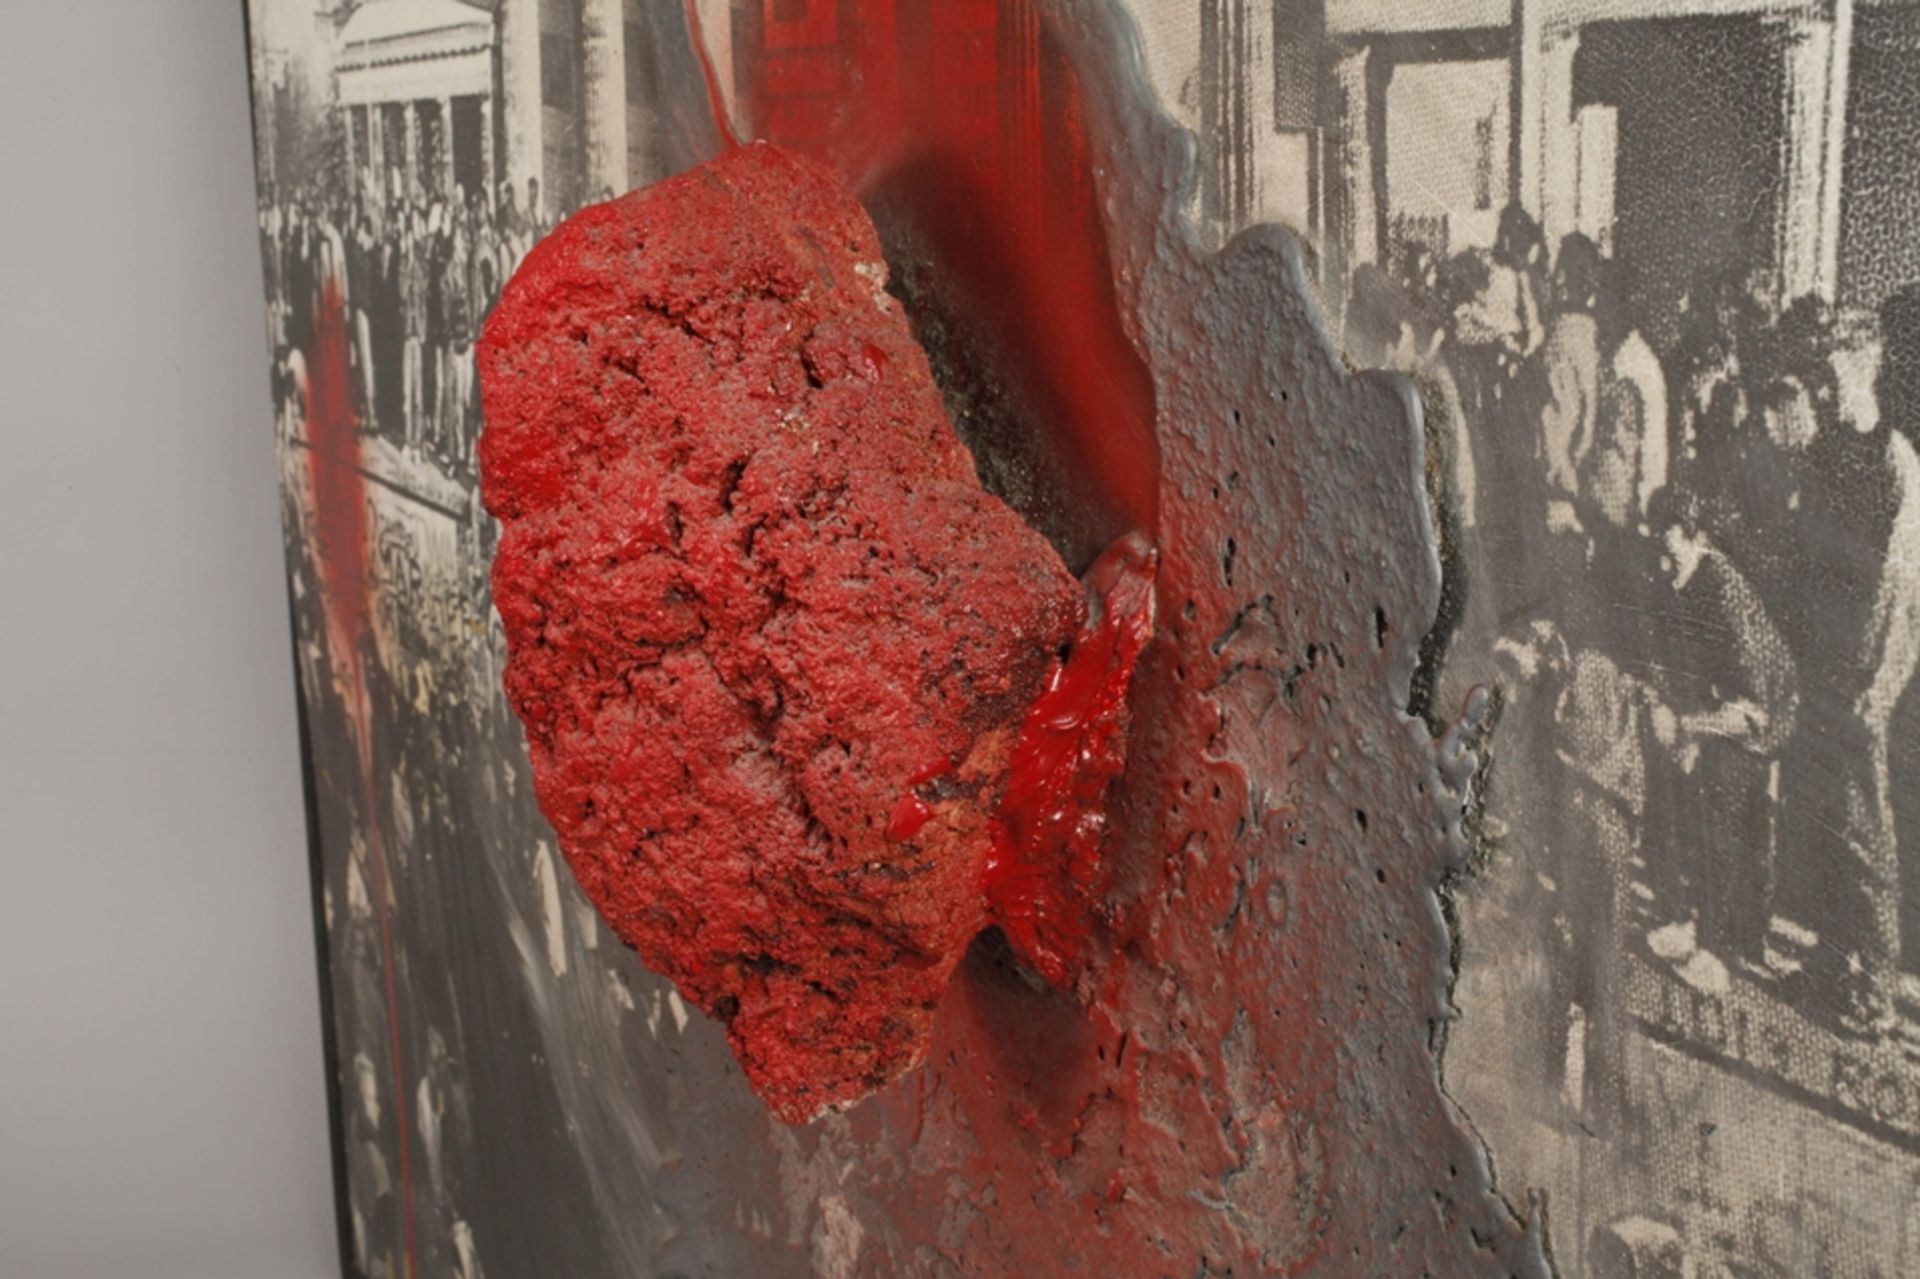 Wolf Vostell, "Das steinerne Herz" - Bild 5 aus 7